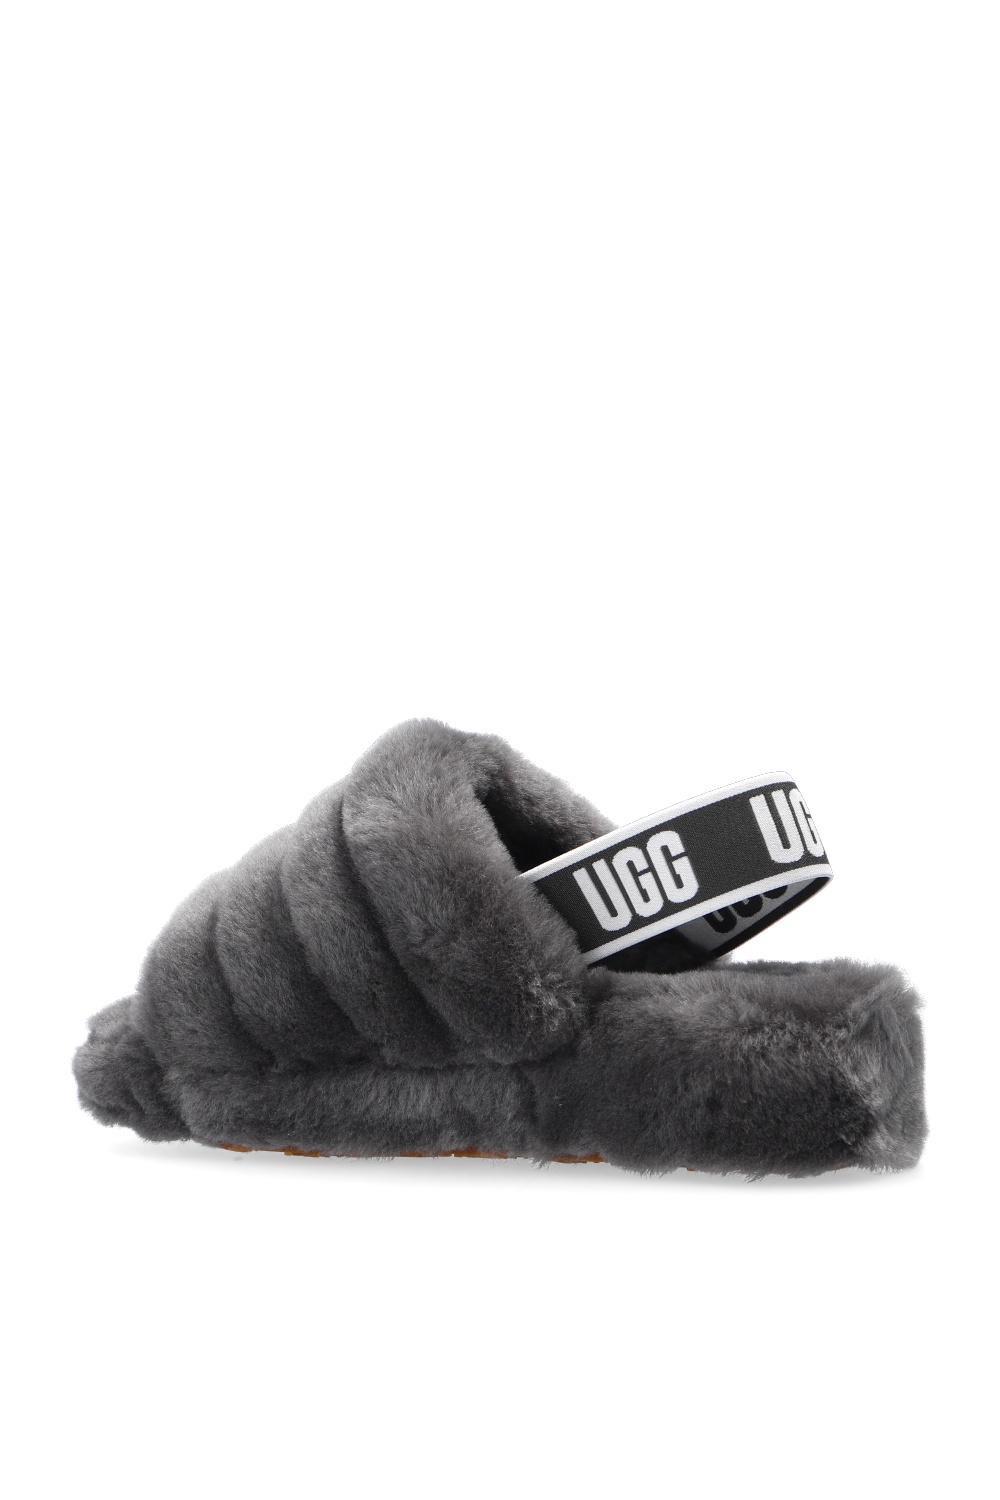 L V UGG fur sandals